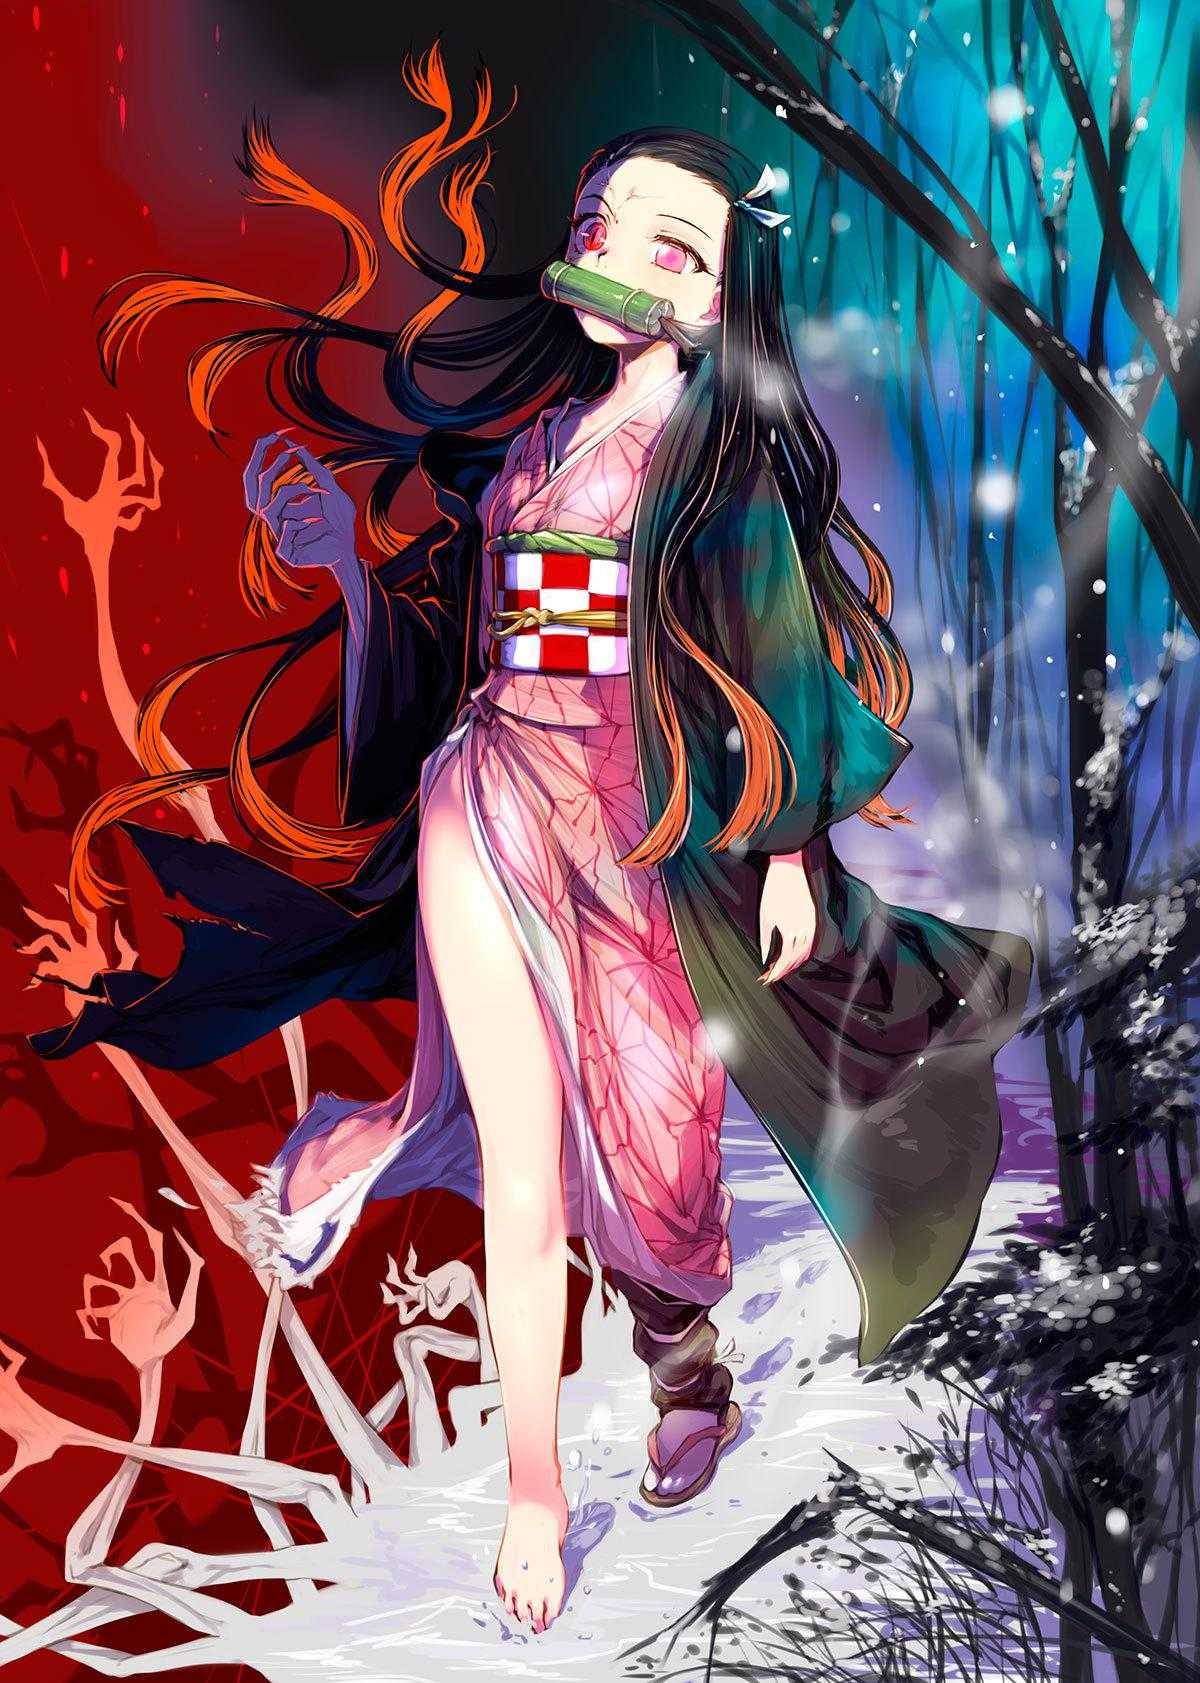 Wallpaper Anime Darkness Tanjiro Kamado Nezuko Kamado Demon Slayer  Kimetsu no Yaiba Background  Download Free Image